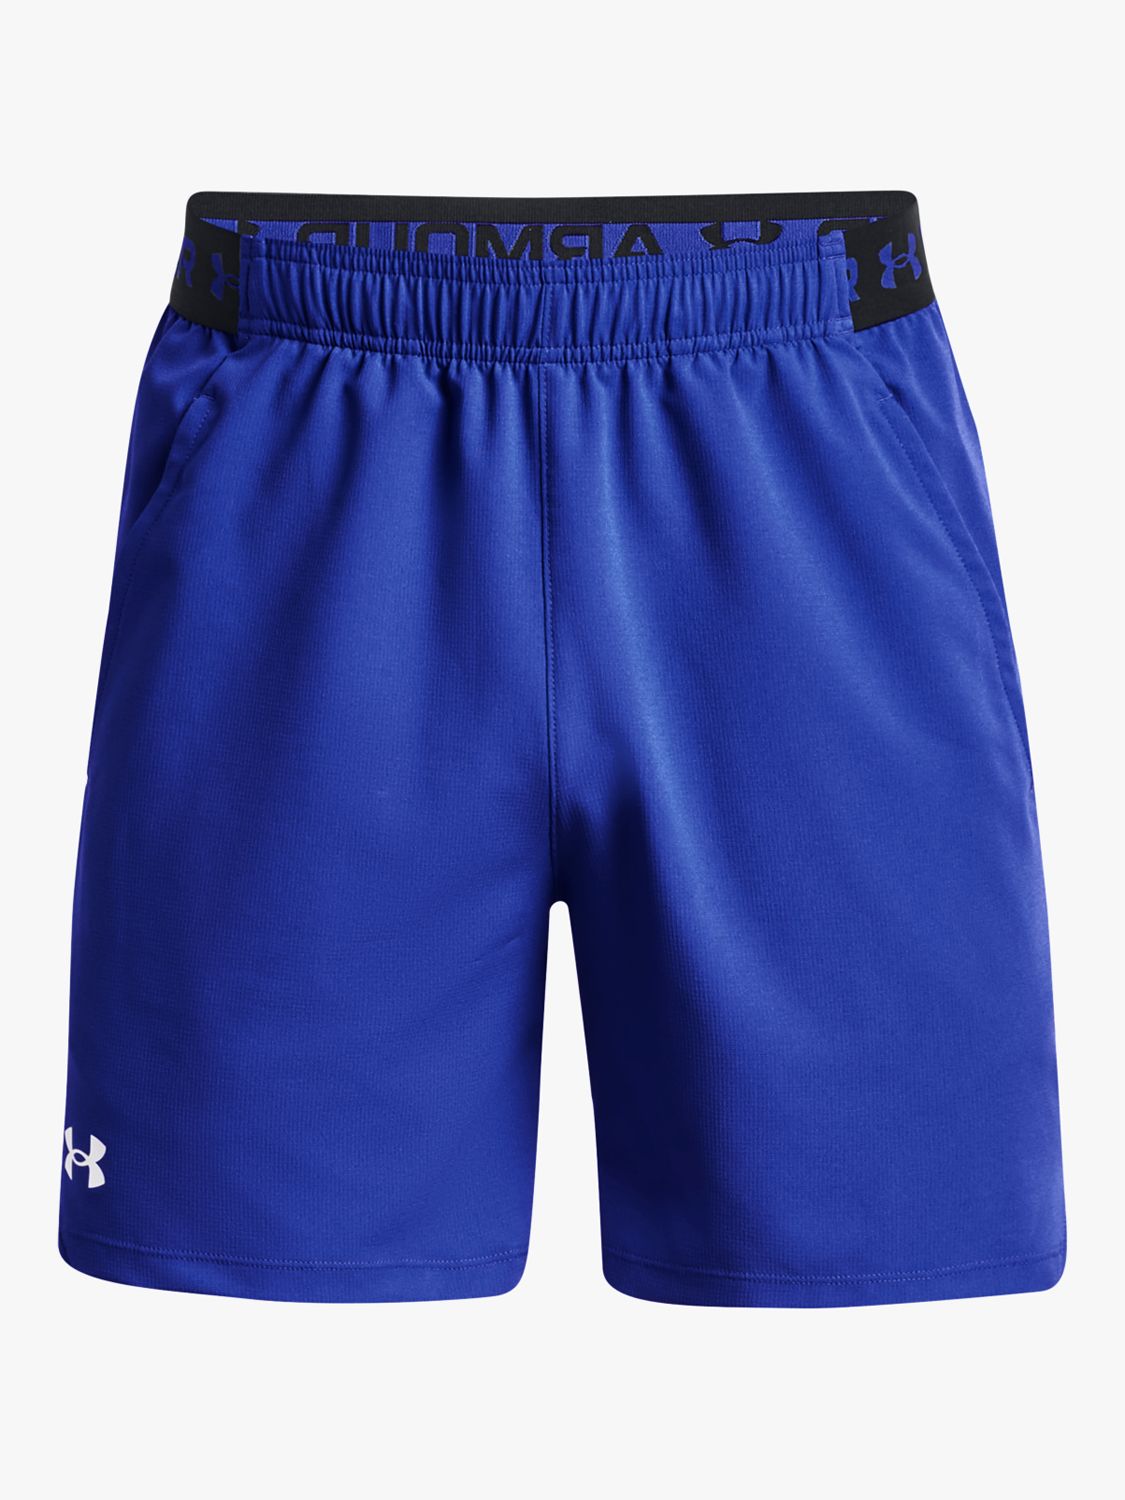 Men's UA Vanish Woven 6in Shorts Blue, Buy Men's UA Vanish Woven 6in Shorts  Blue here